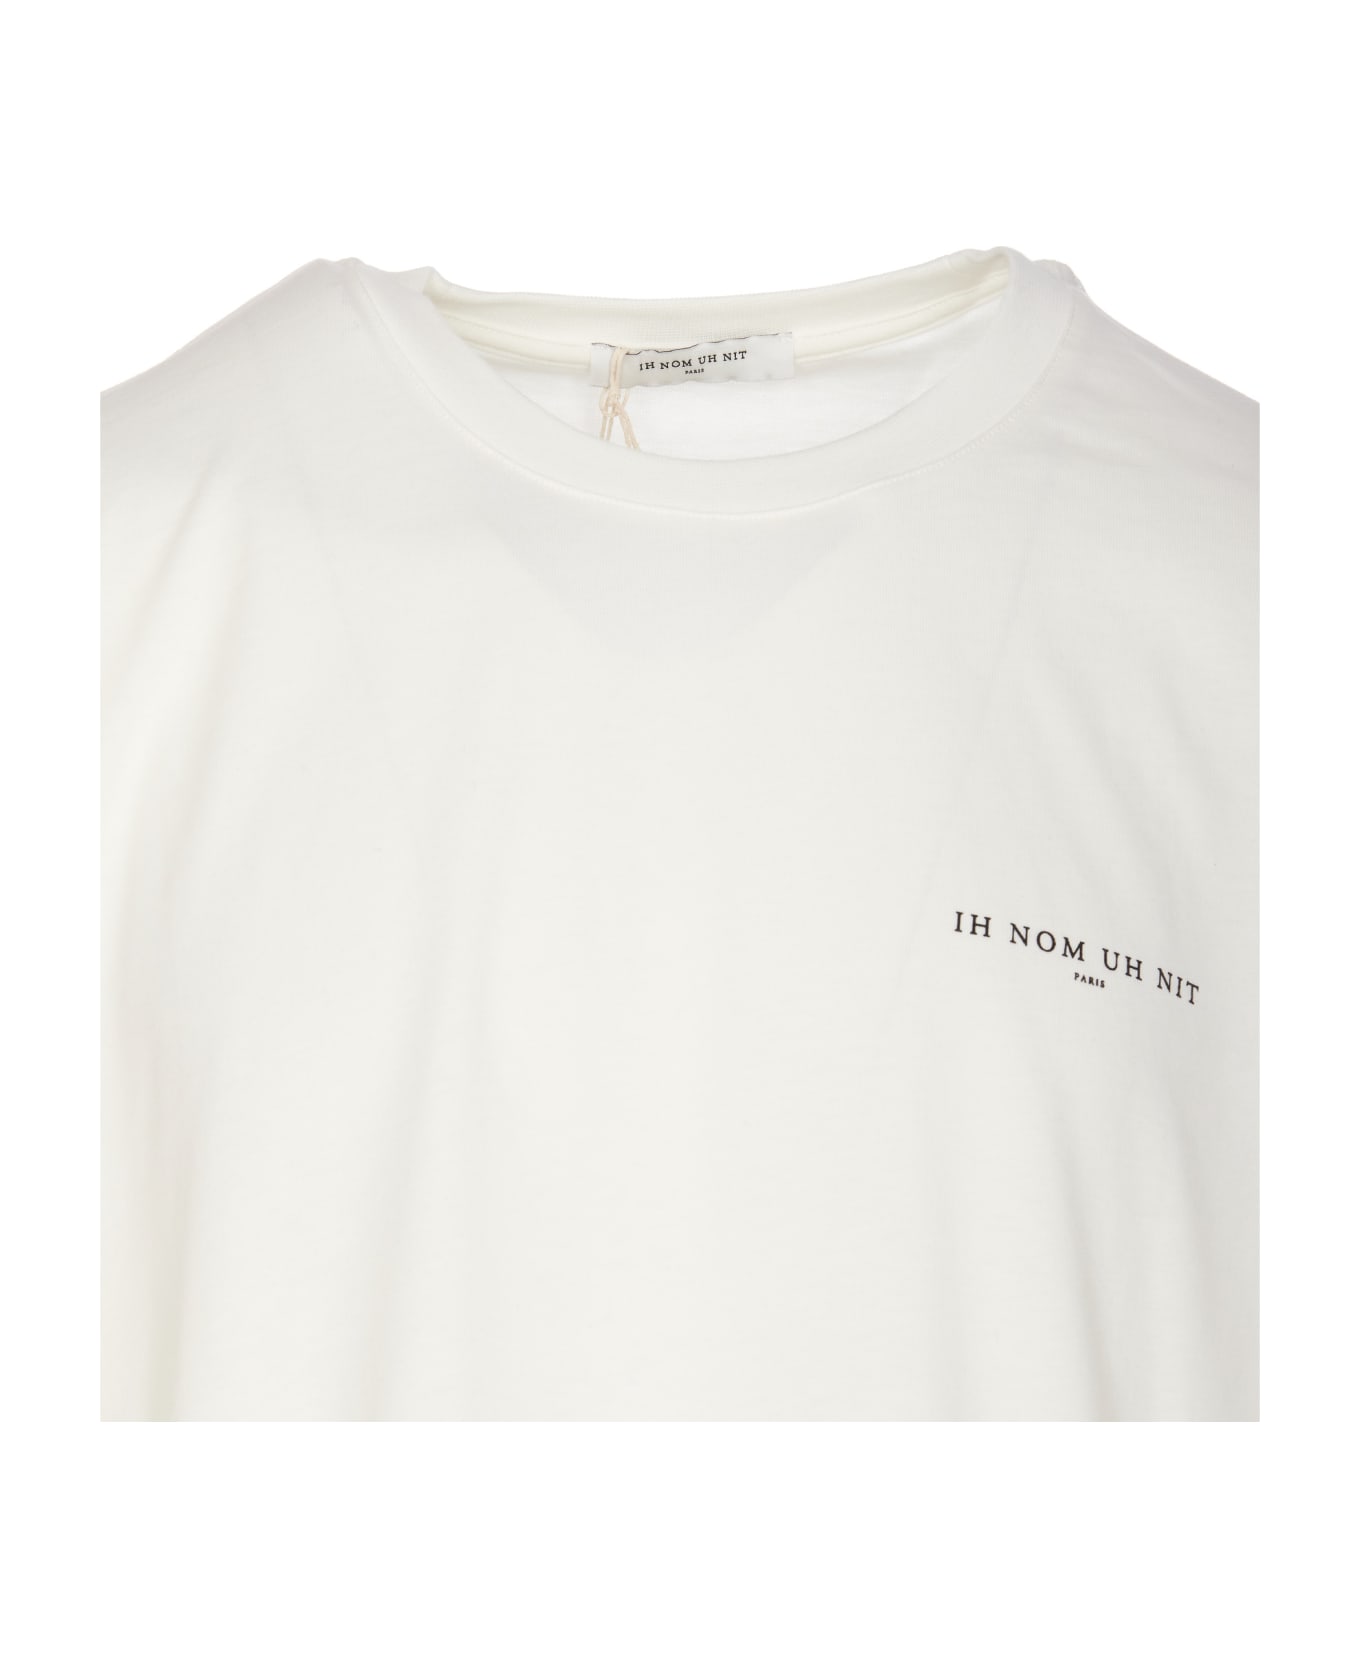 ih nom uh nit Logo T-shirt - White シャツ